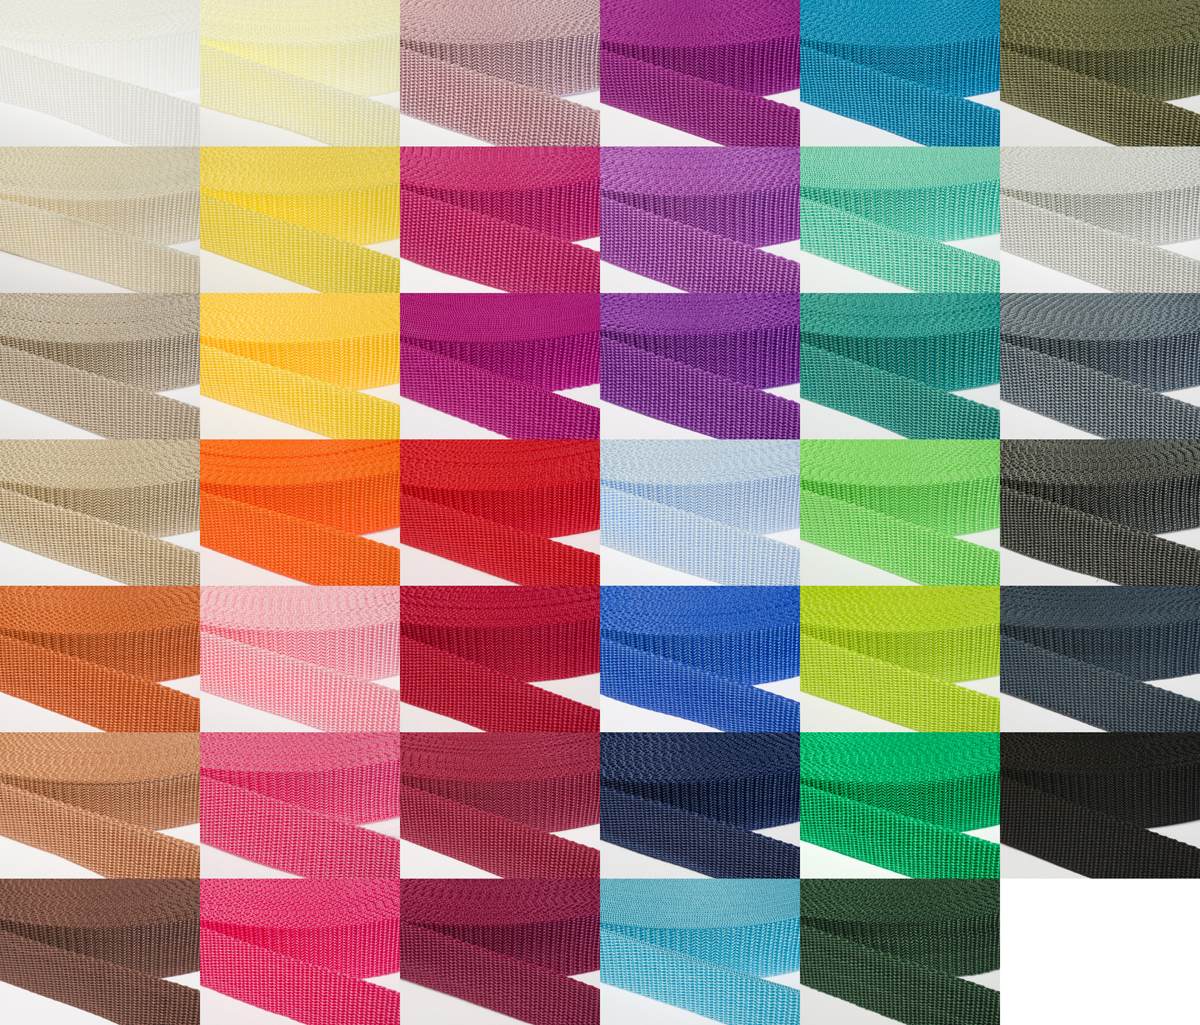 Gurtband 30mm breit aus Polypropylen in 41 Farben 41 - schwarz 6 Meter